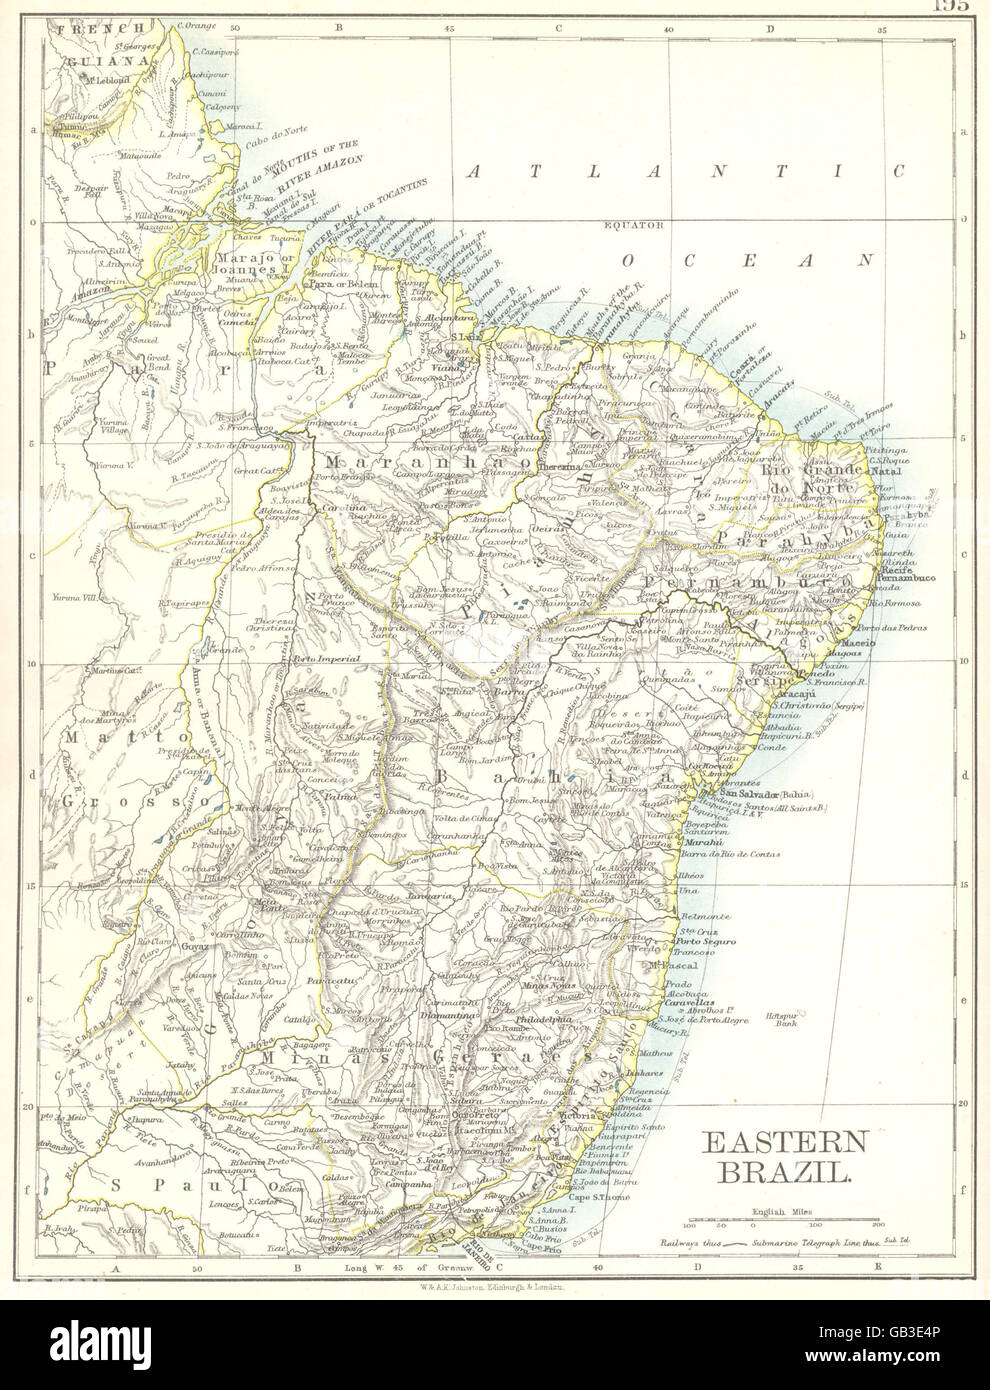 L'EST DU BRÉSIL : Bahia Minas Gerais, Rio de Janeiro, Pernambuco Espirito Santo 1897 map Banque D'Images